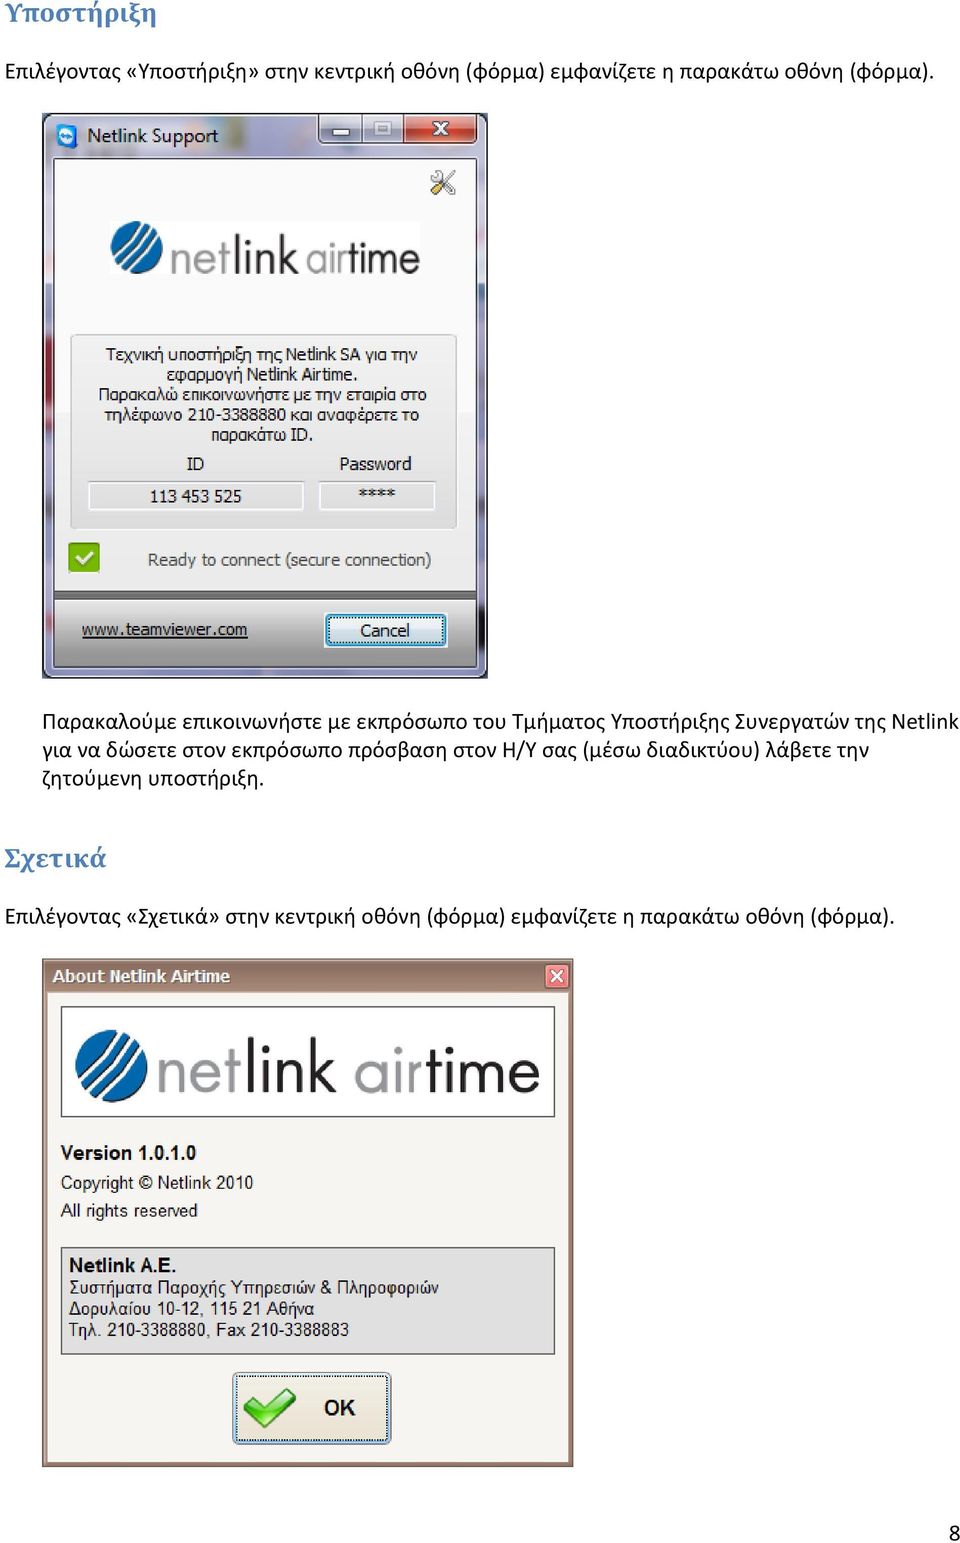 Παρακαλούμε επικοινωνήστε με εκπρόσωπο του Τμήματος Υποστήριξης Συνεργατών της Netlink για να